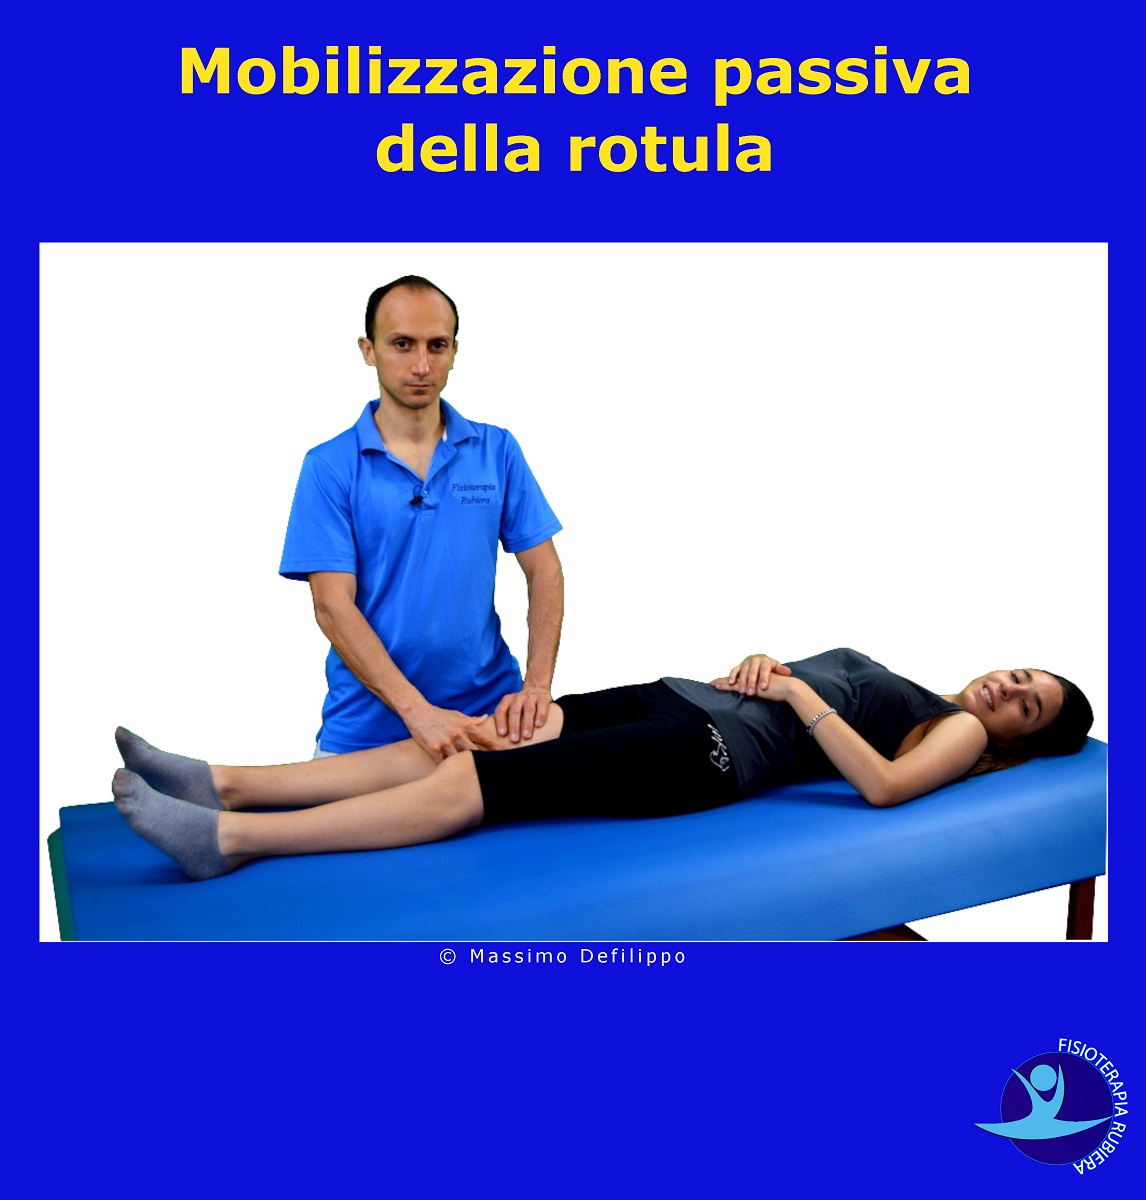 mobilizzazione passiva della rotula